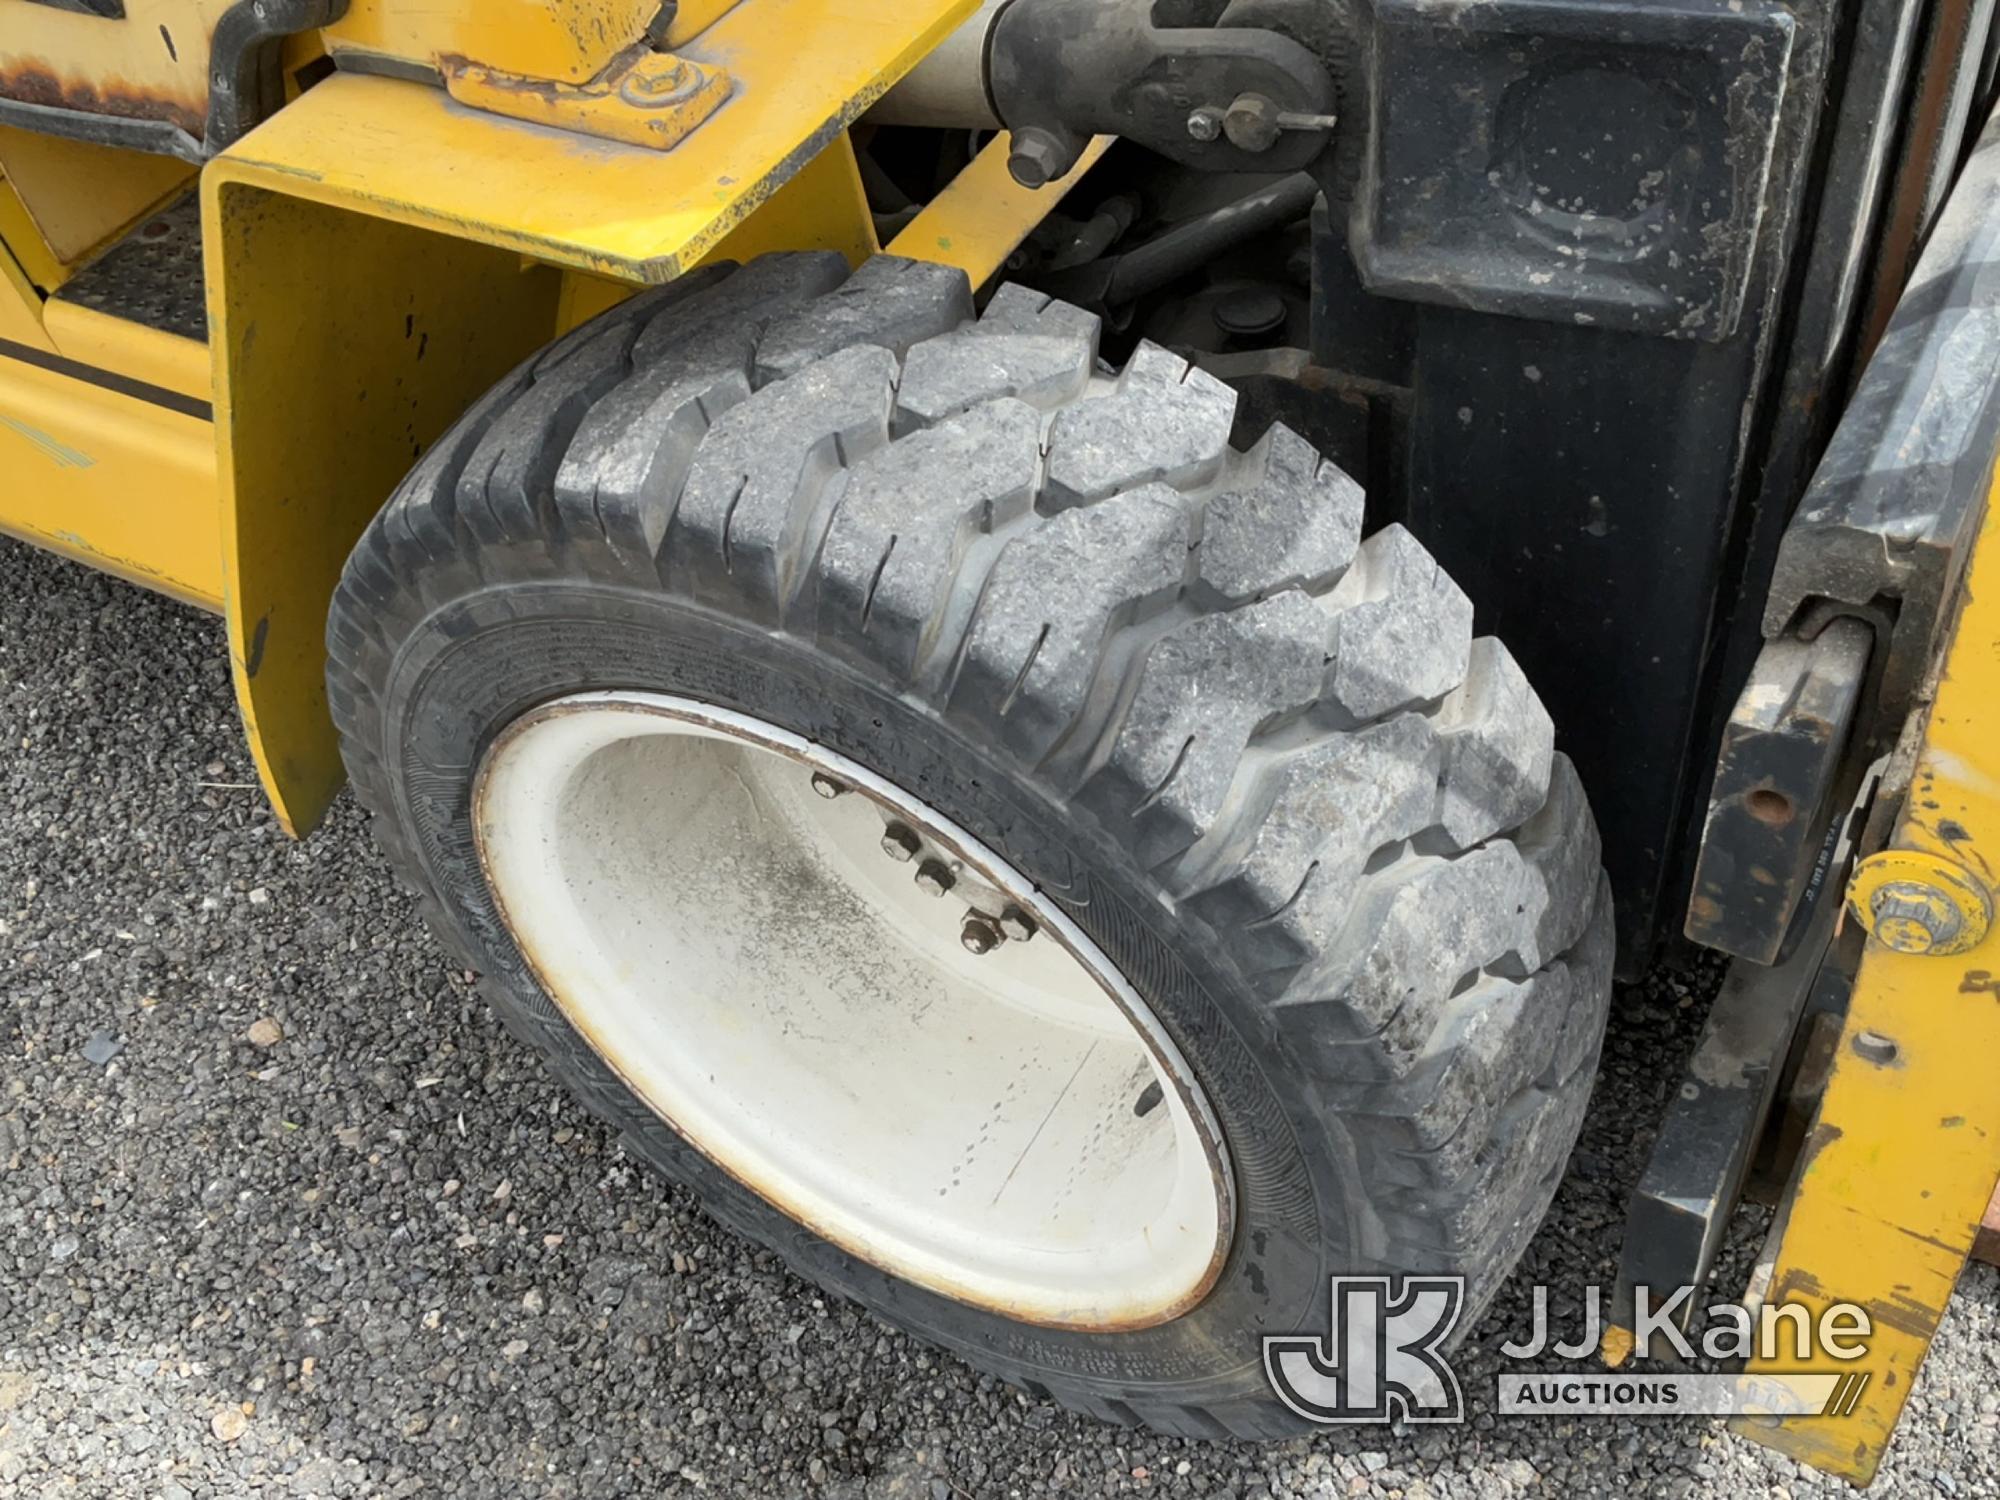 (Salt Lake City, UT) Clark GPX30 Rubber Tired Forklift Runs, Moves & Operates